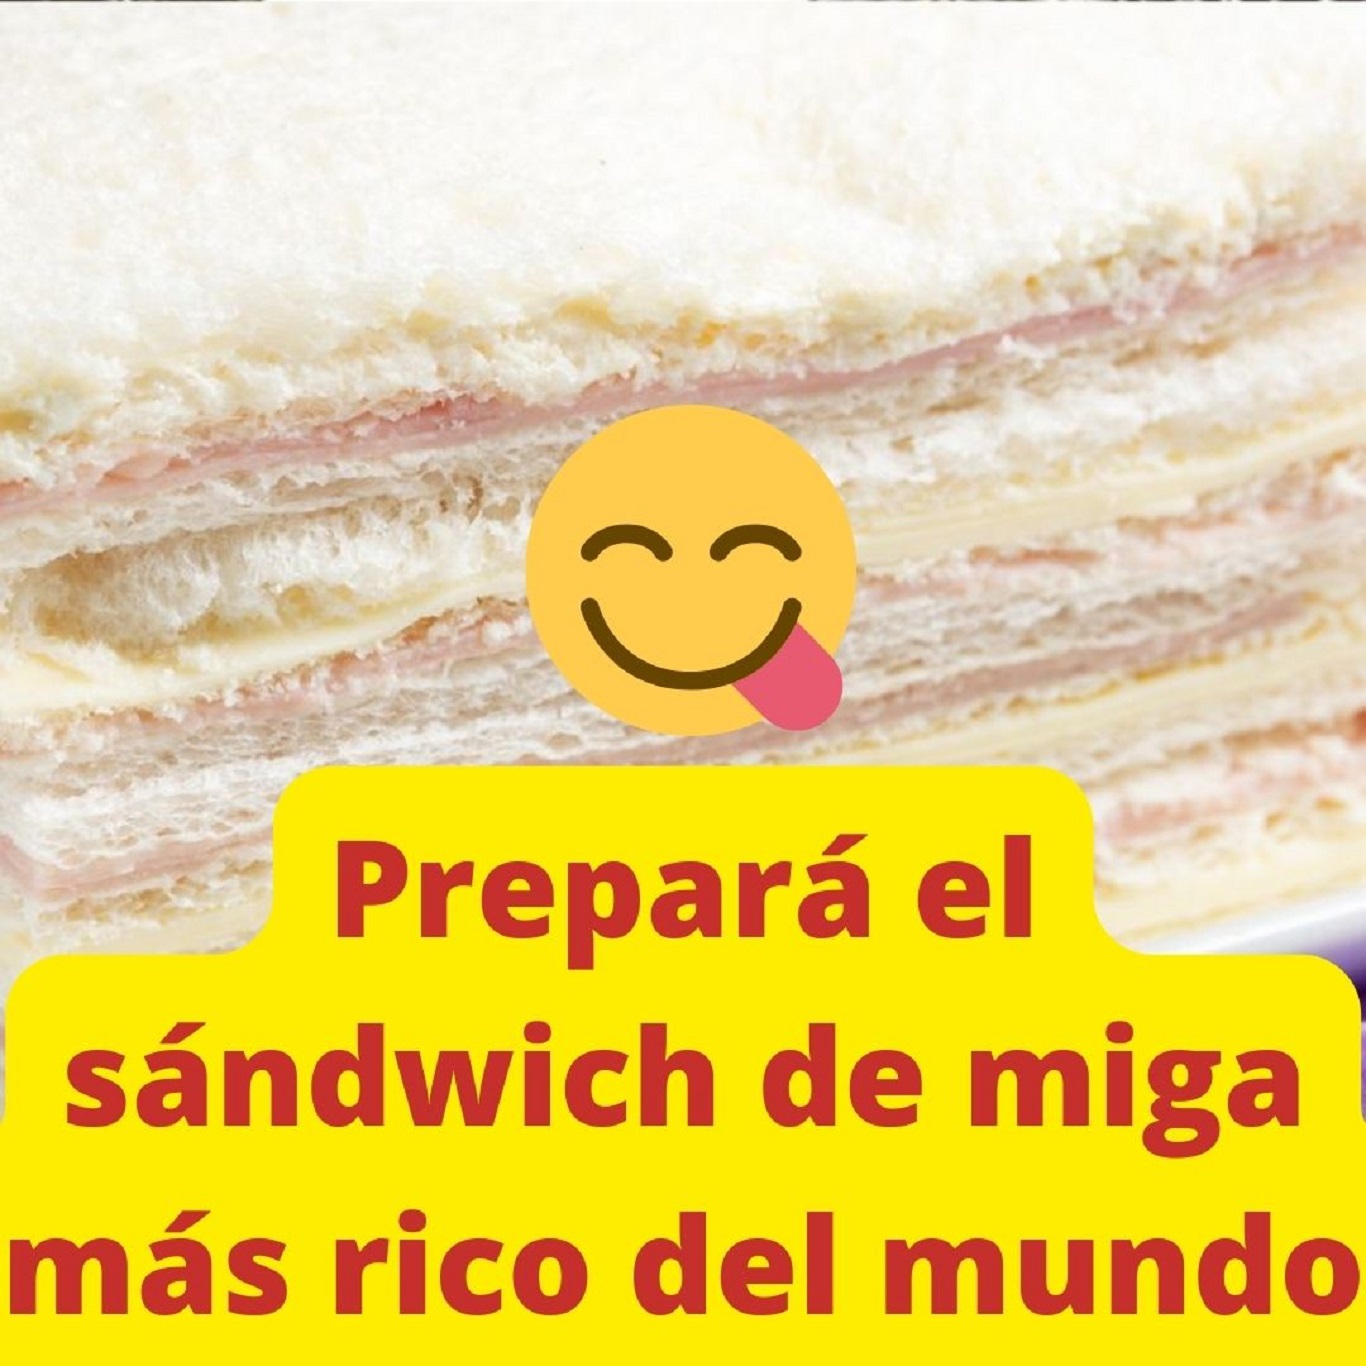 La receta de los sándwiches de miga más deliciosos - Mendoza Post